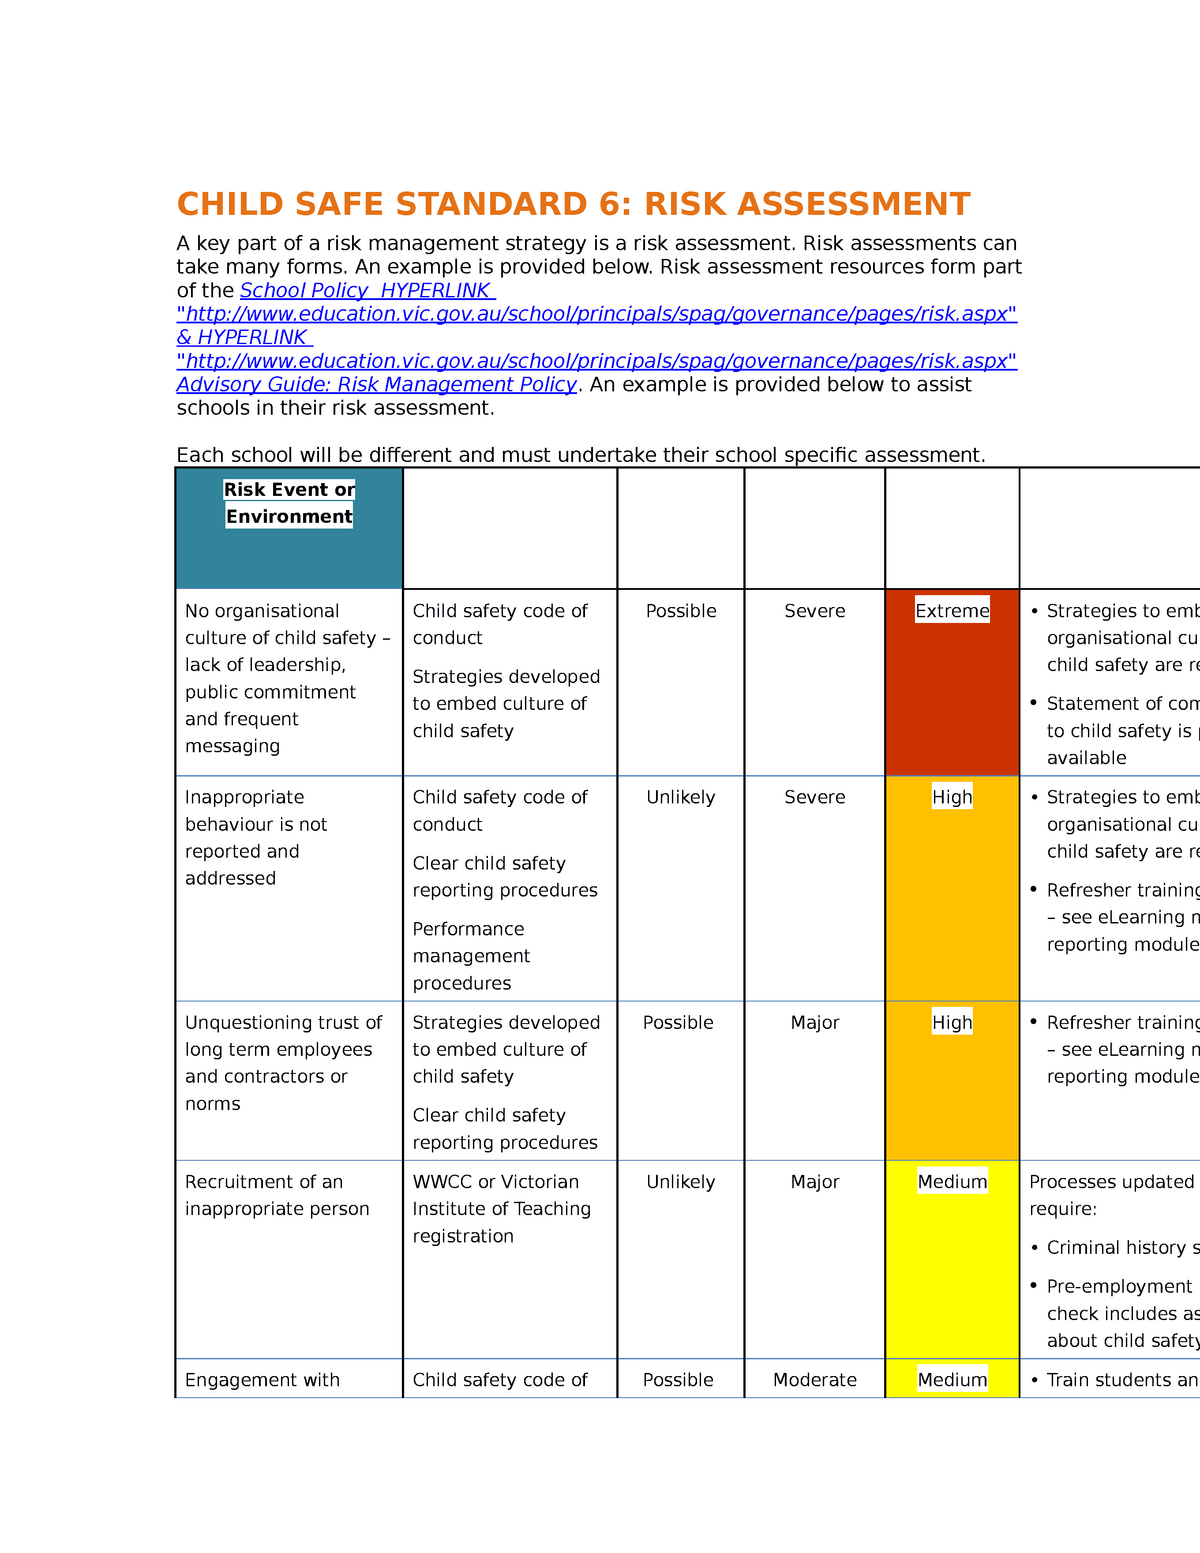 Child Safe Standard 6 Risk Assessment CHILD SAFE STANDARD 6: RISK